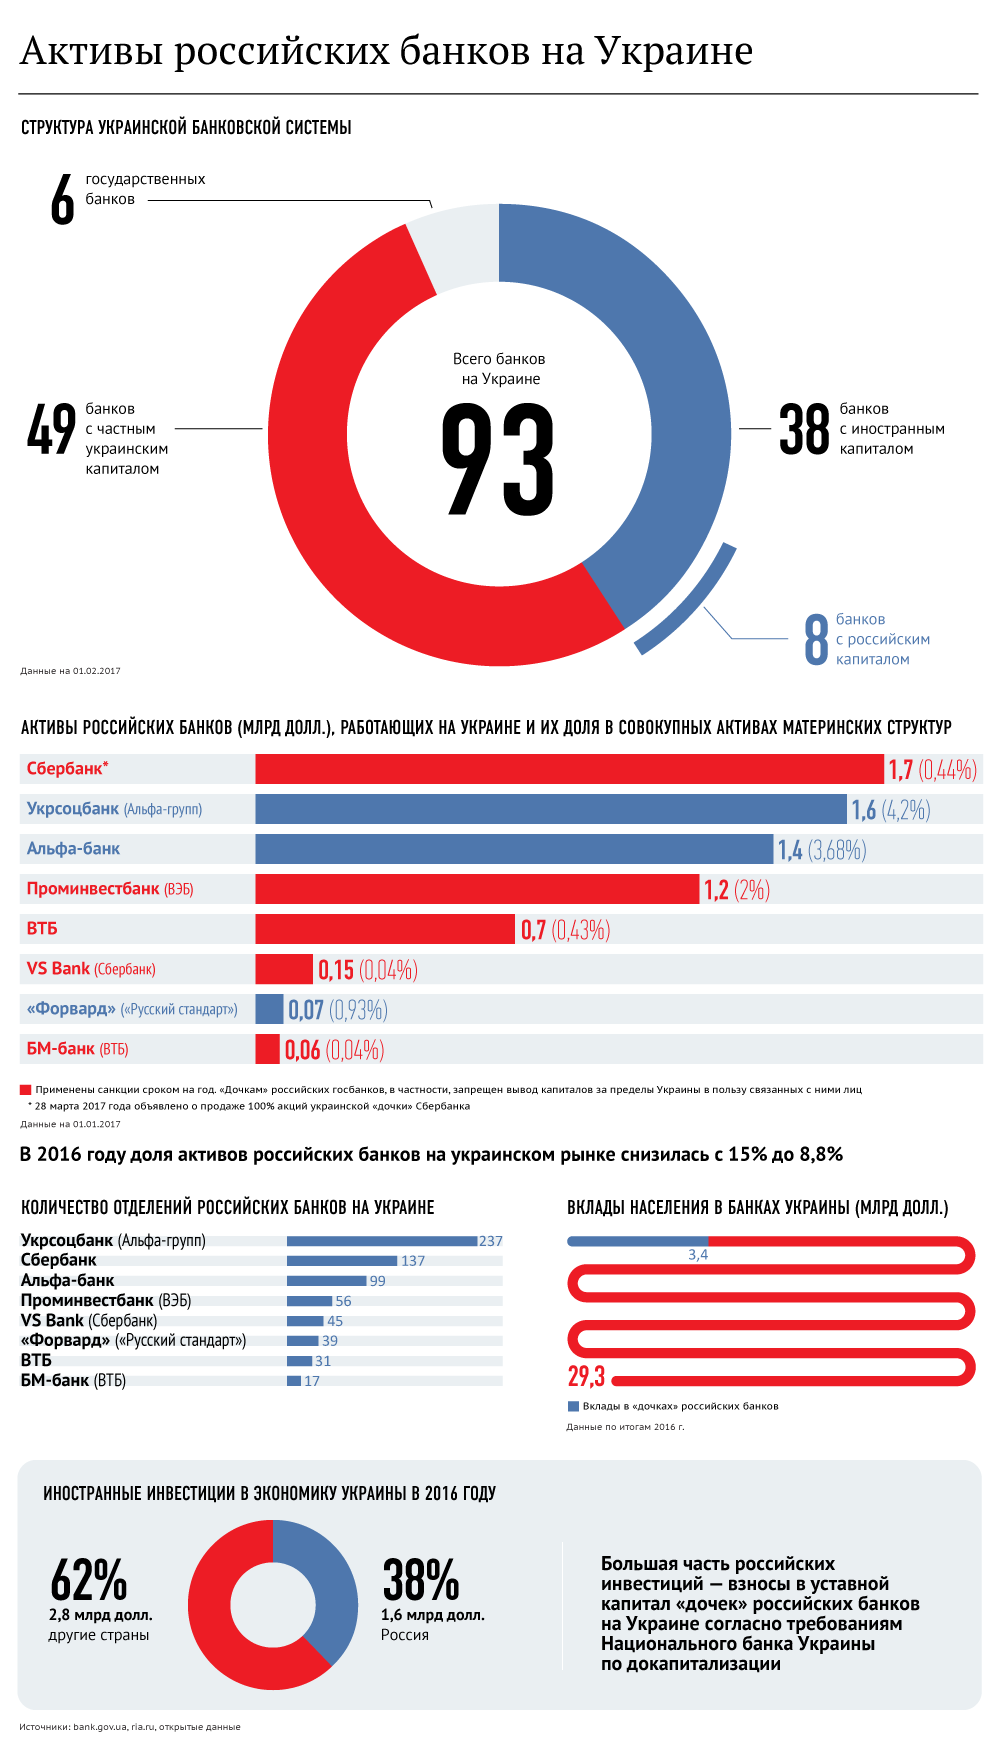 Под санкциями. Активы российских банков в Украине. Инфографика